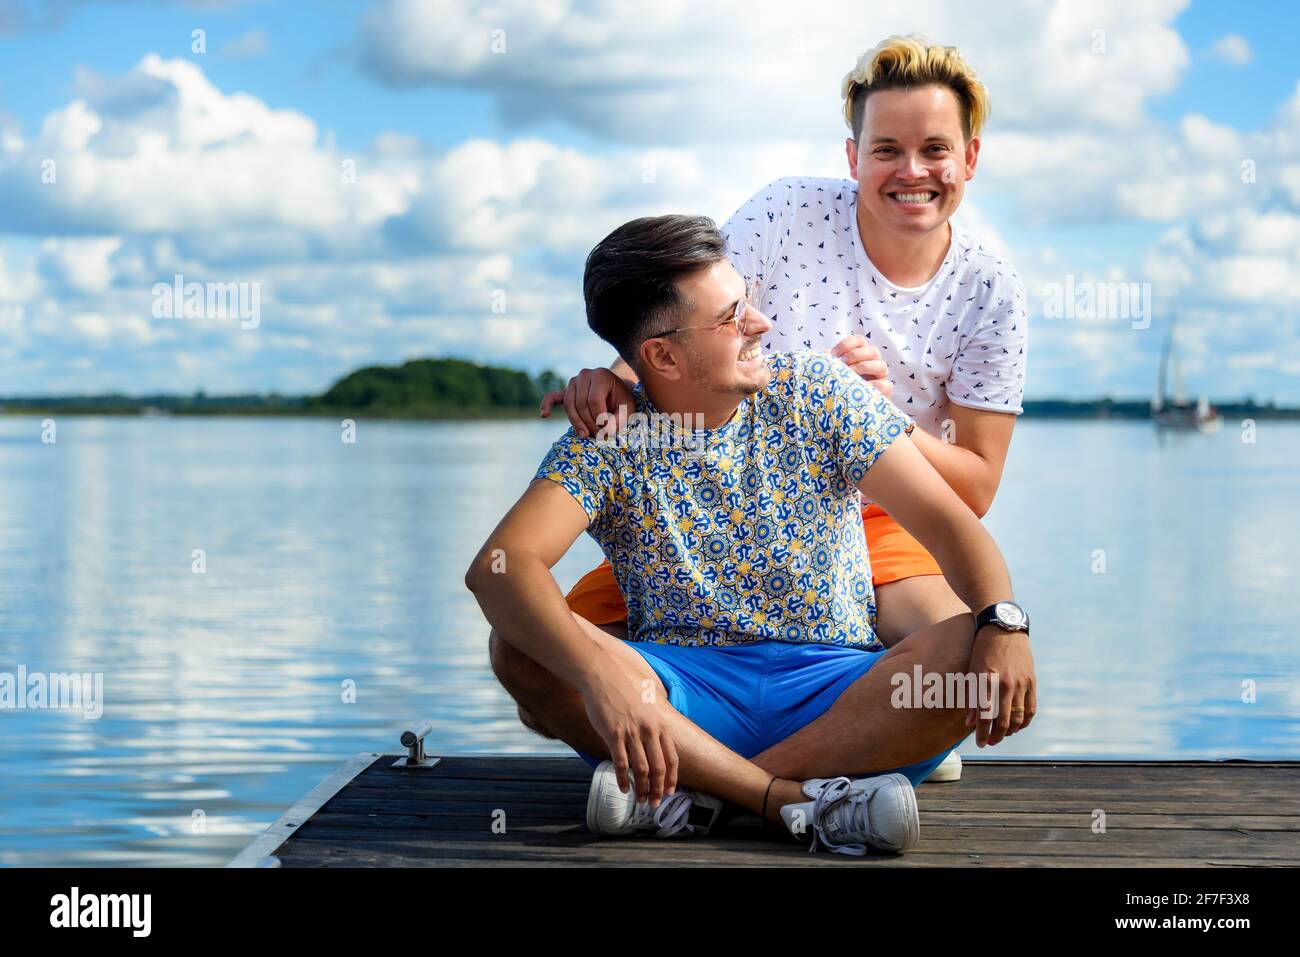 joyeux couple gay souriant assis sur une jetée en bois contre lac et ciel bleu Banque D'Images